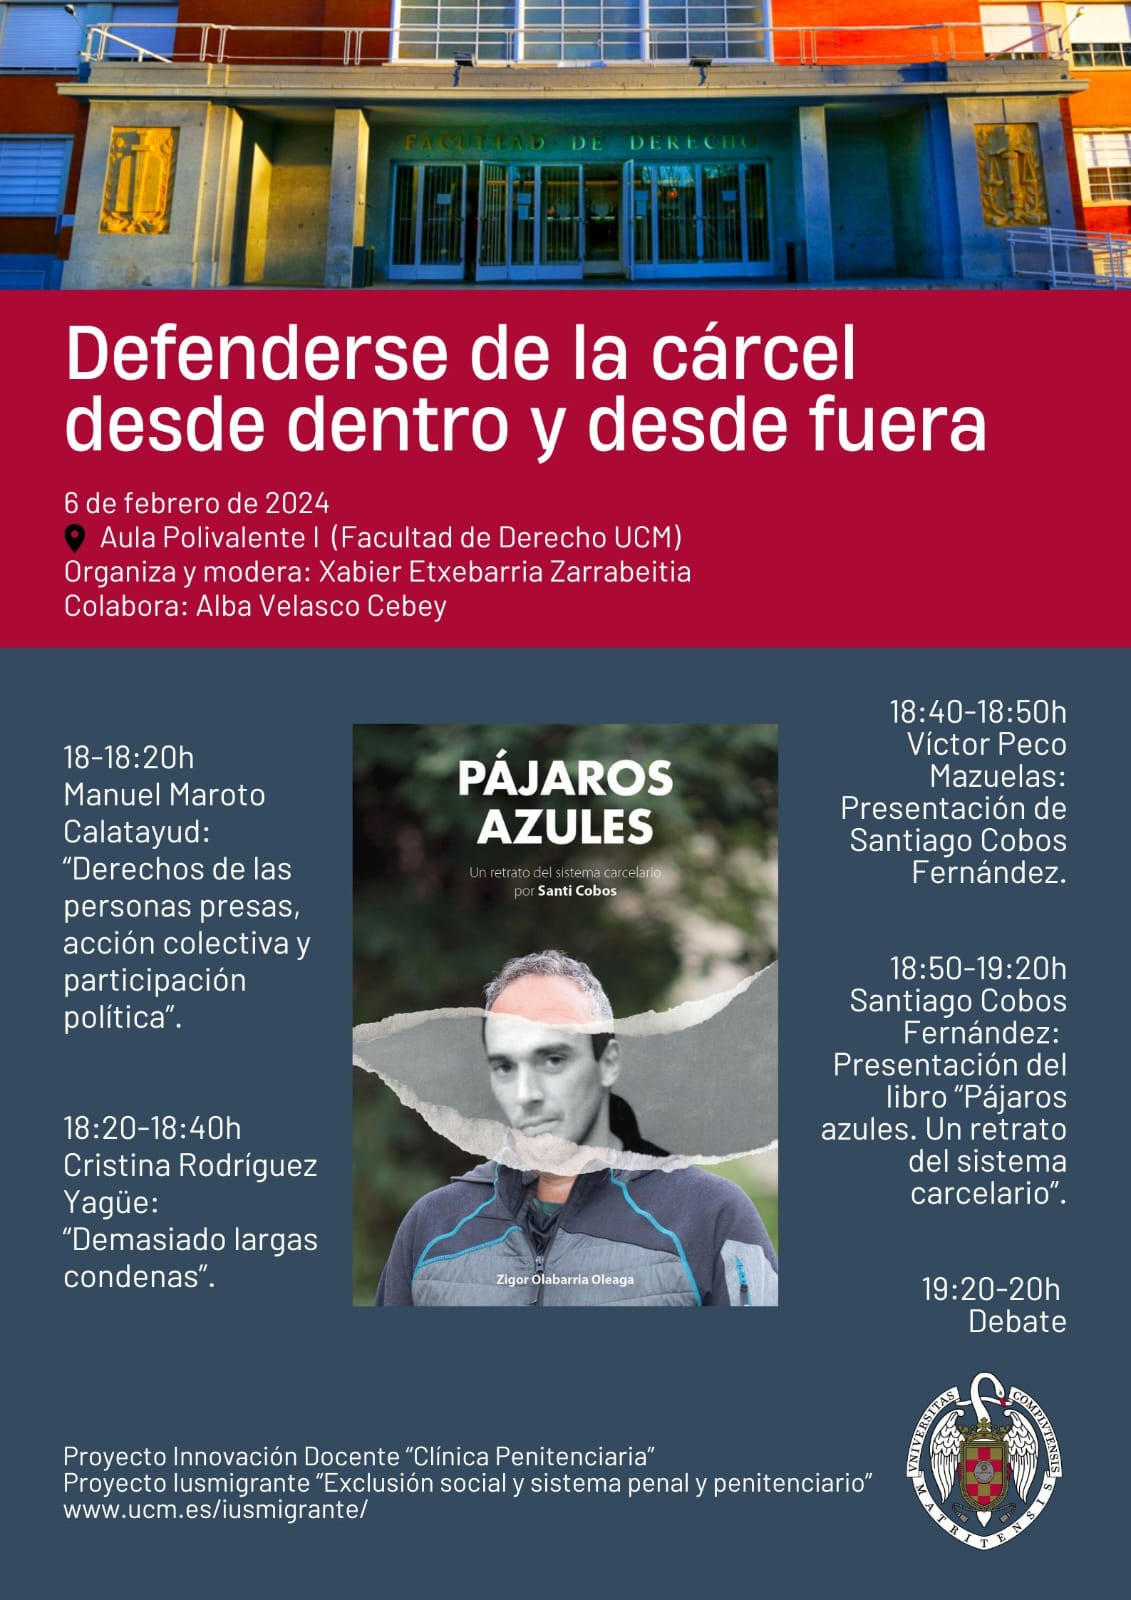 Seminario "Defenderse de la cárcel desde dentro y desde fuera" (06/02/2024)